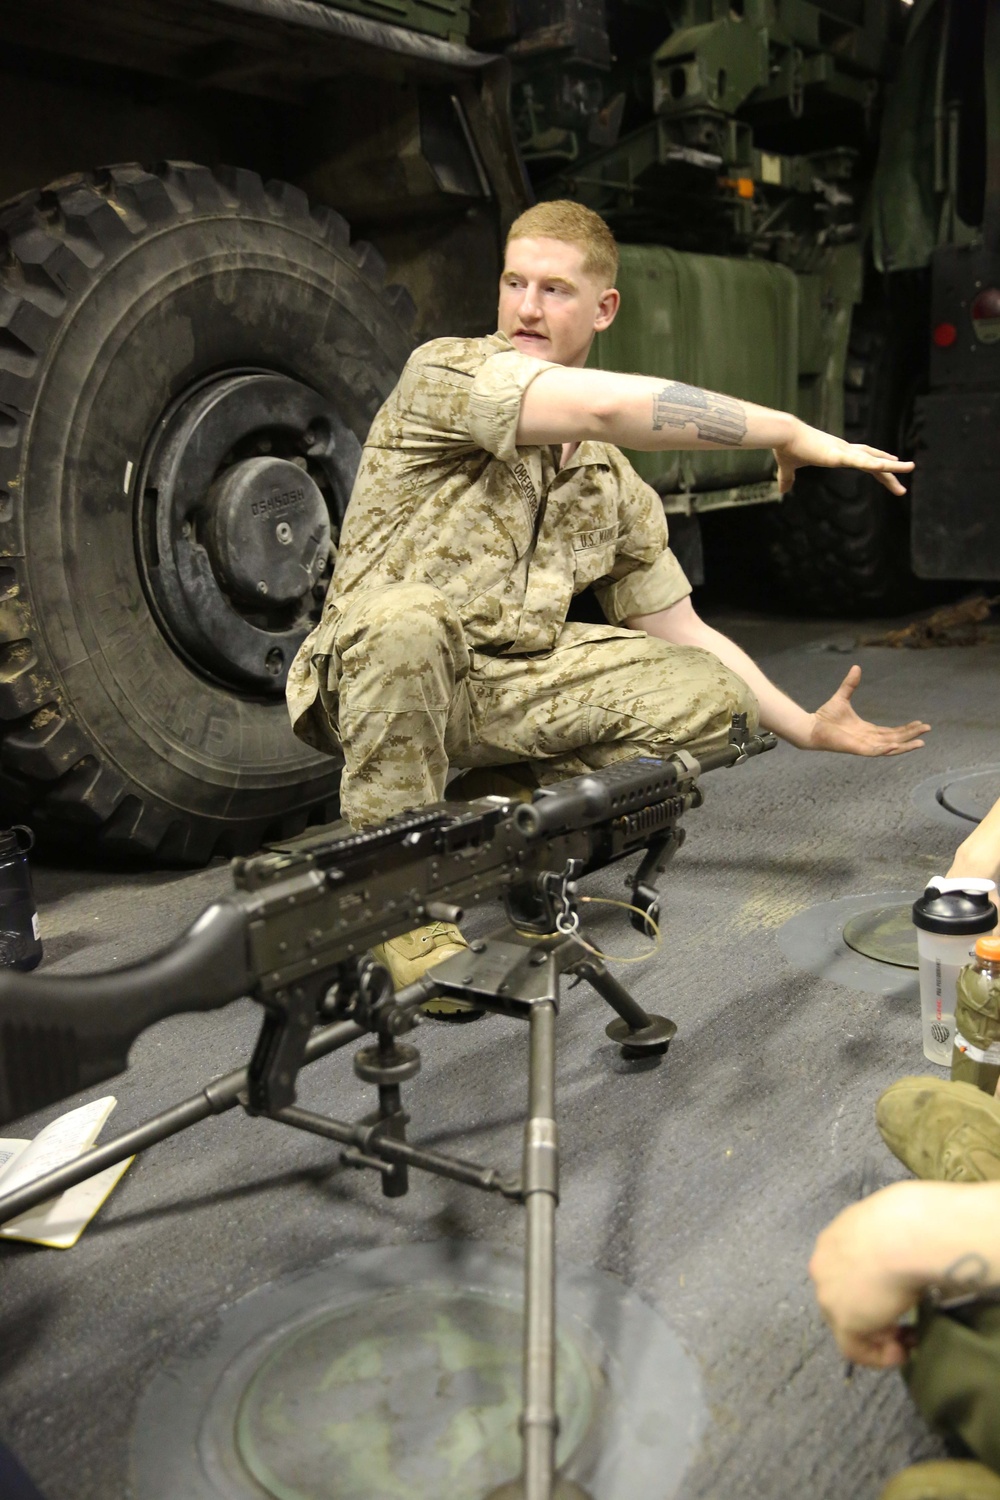 BLT 1/6 M240B machine gun sustainment